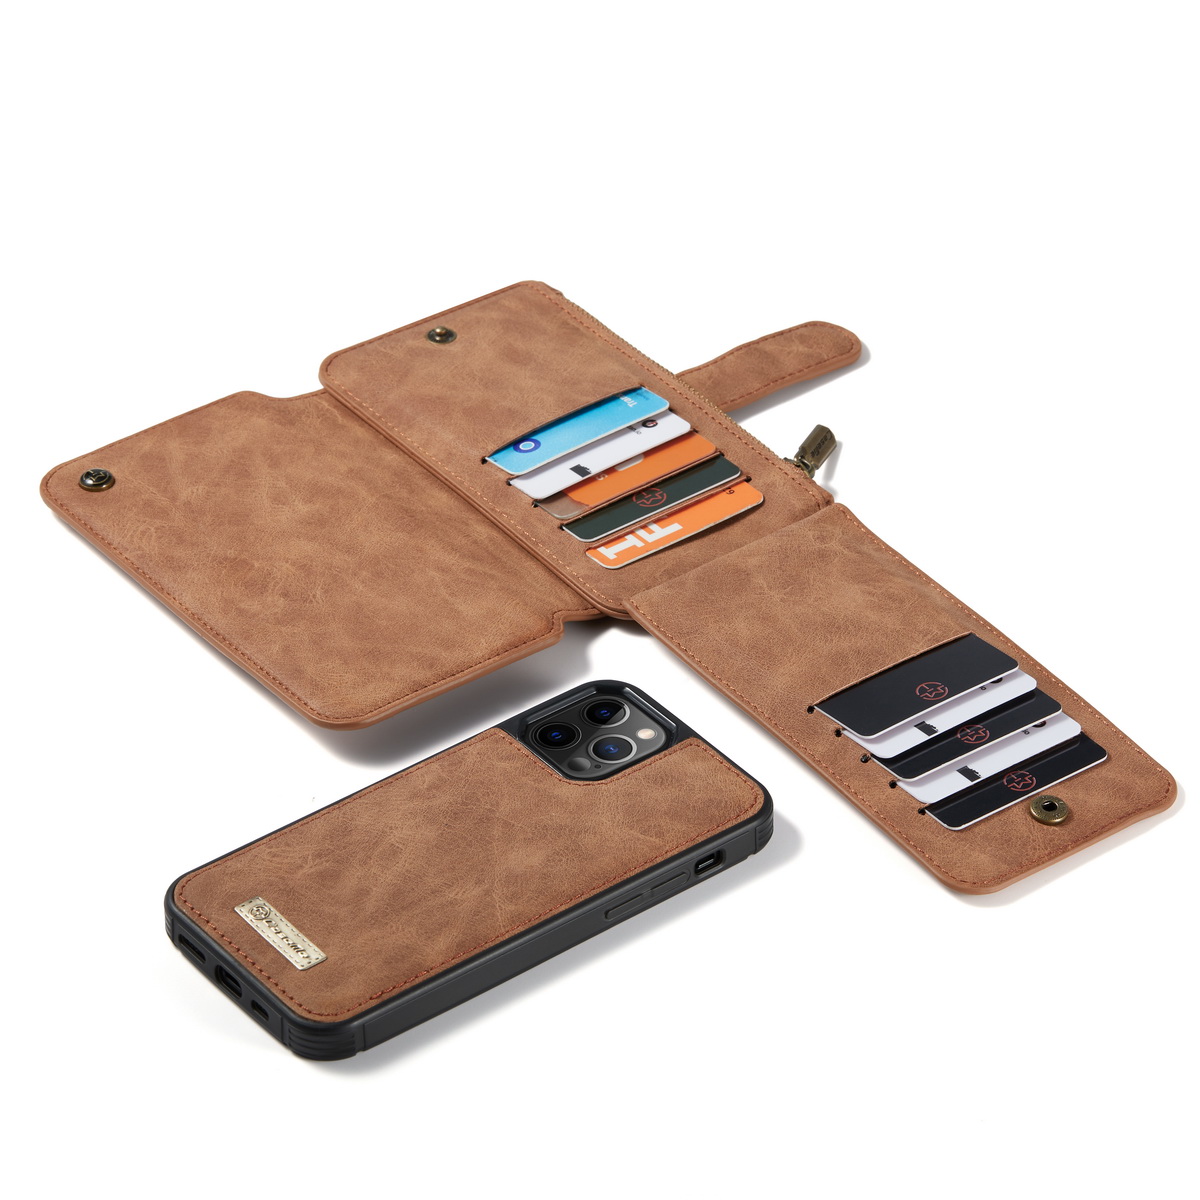 CaseMe läderfodral med magnetskal, iPhone 12/12 Pro, brun